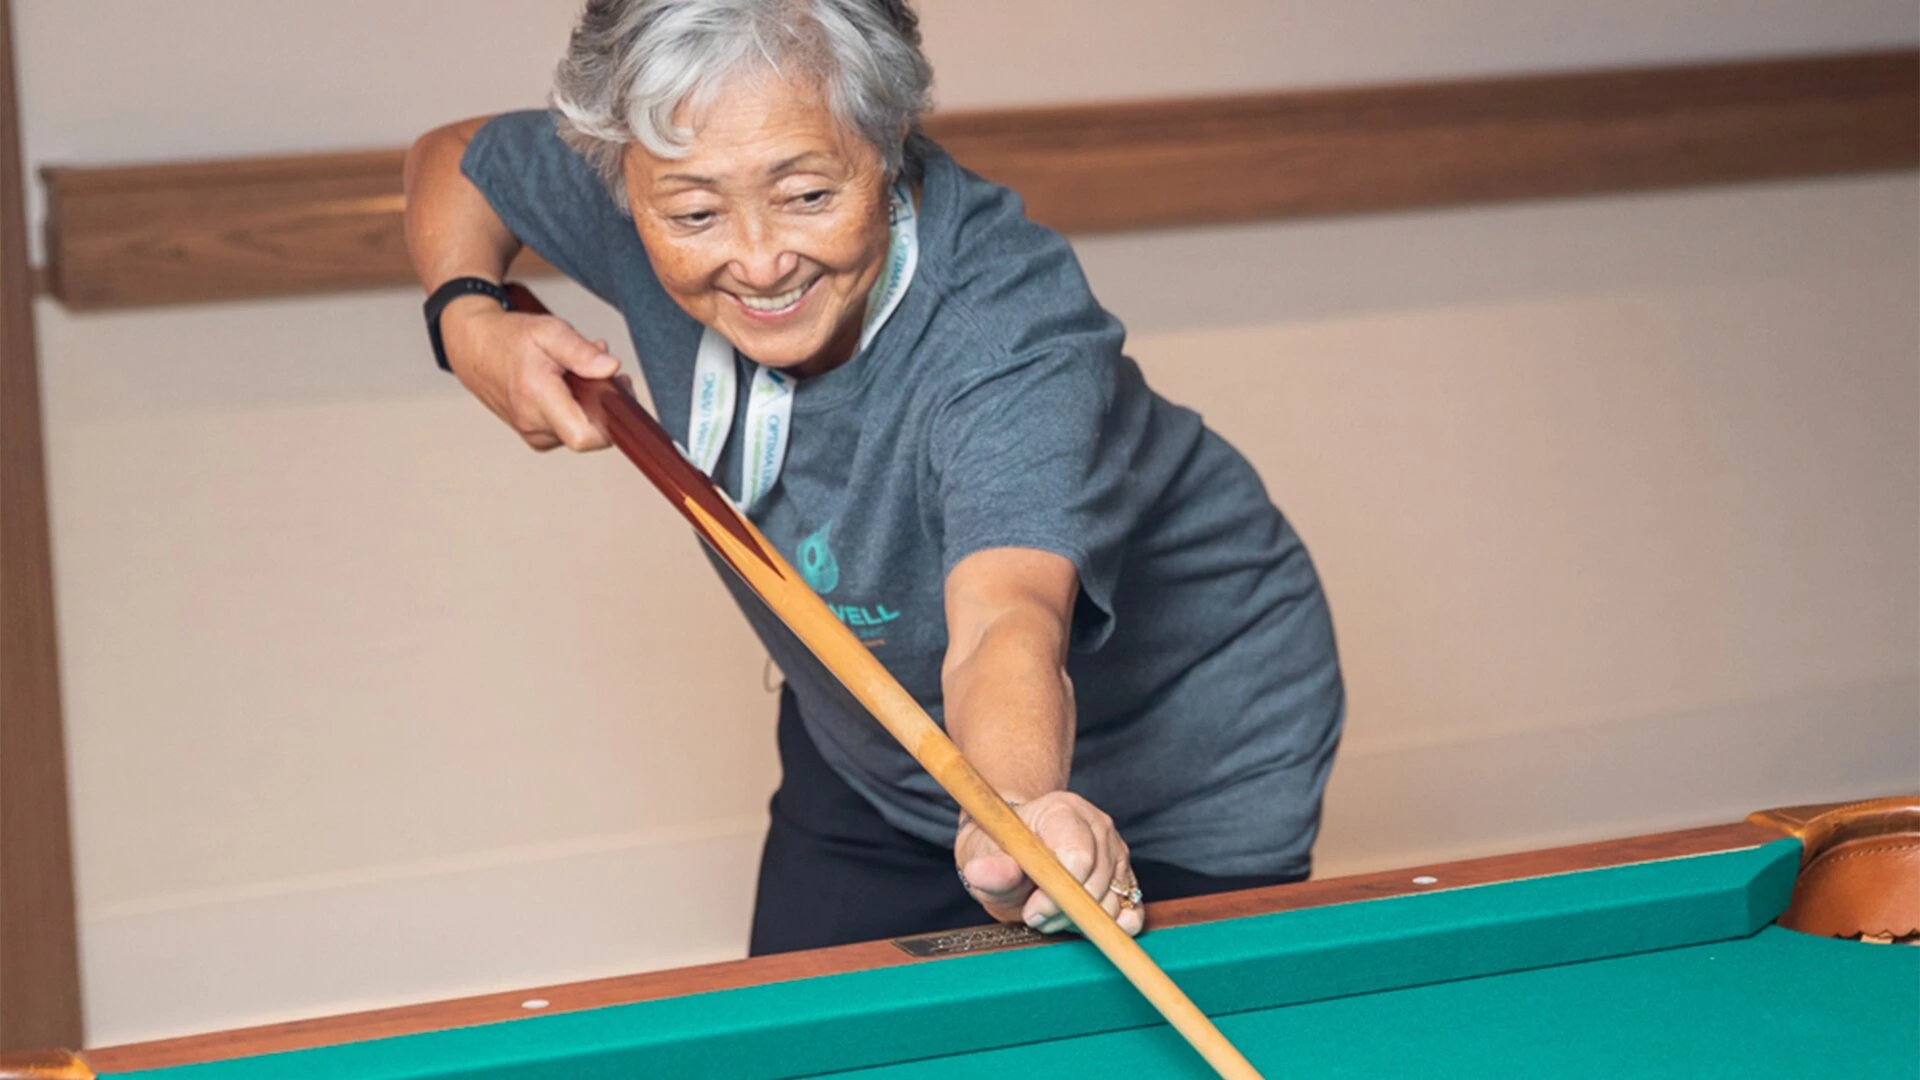 A senior woman playing pool in senior housing